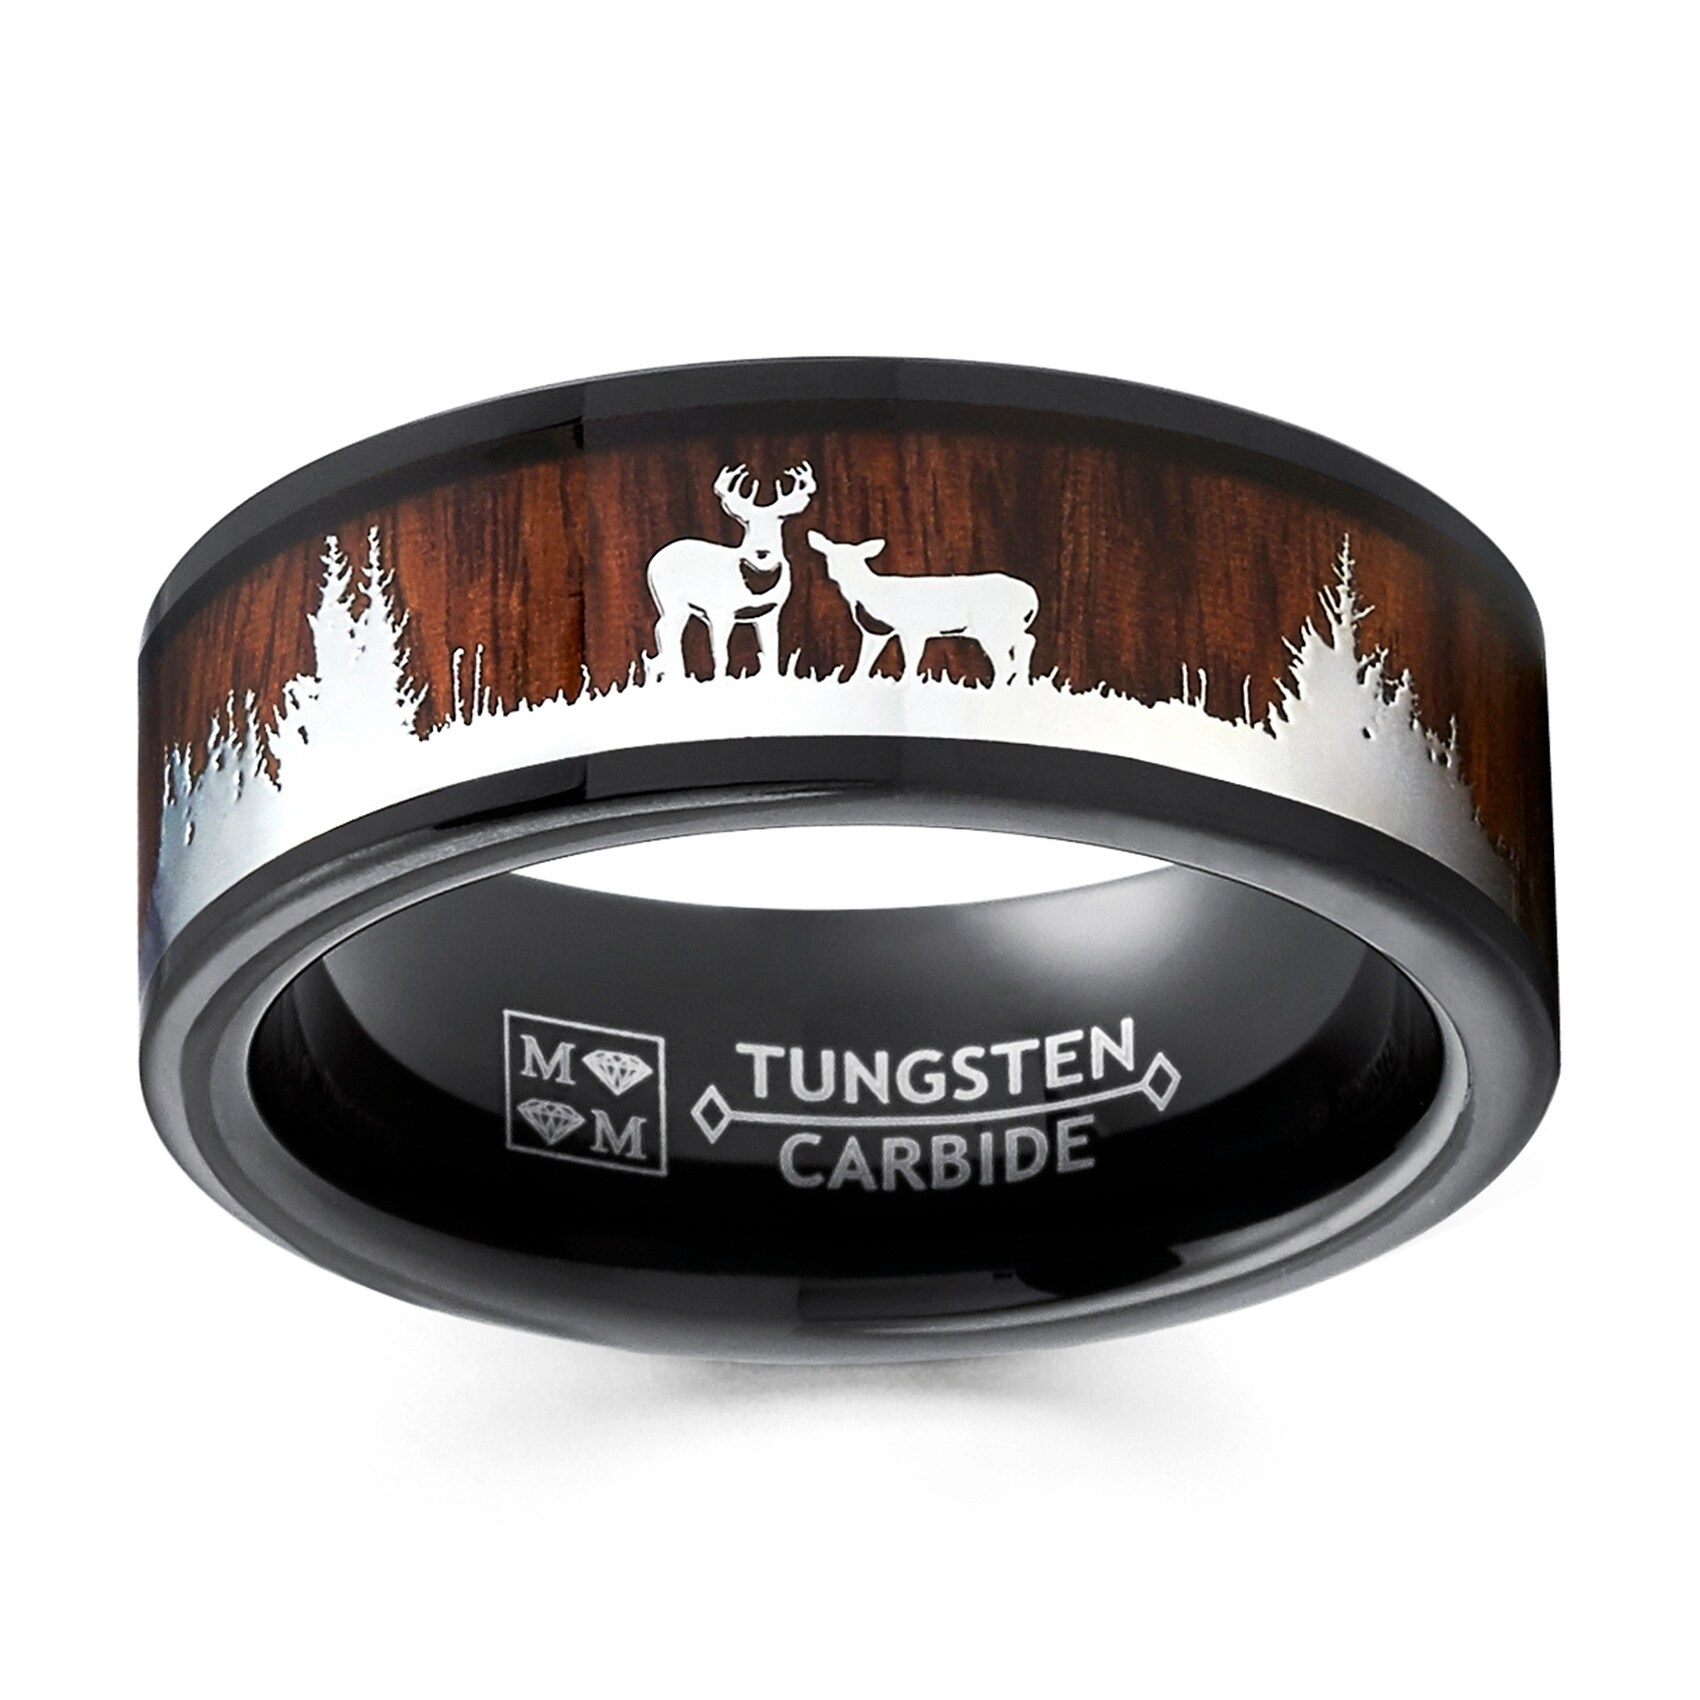 Thorsten Deer STAG Antlers Animal Reindeer Deer Stag Head Print Ring Flat Black Tungsten Ring 4mm Wide Wedding Band from Roy Rose Jewelry